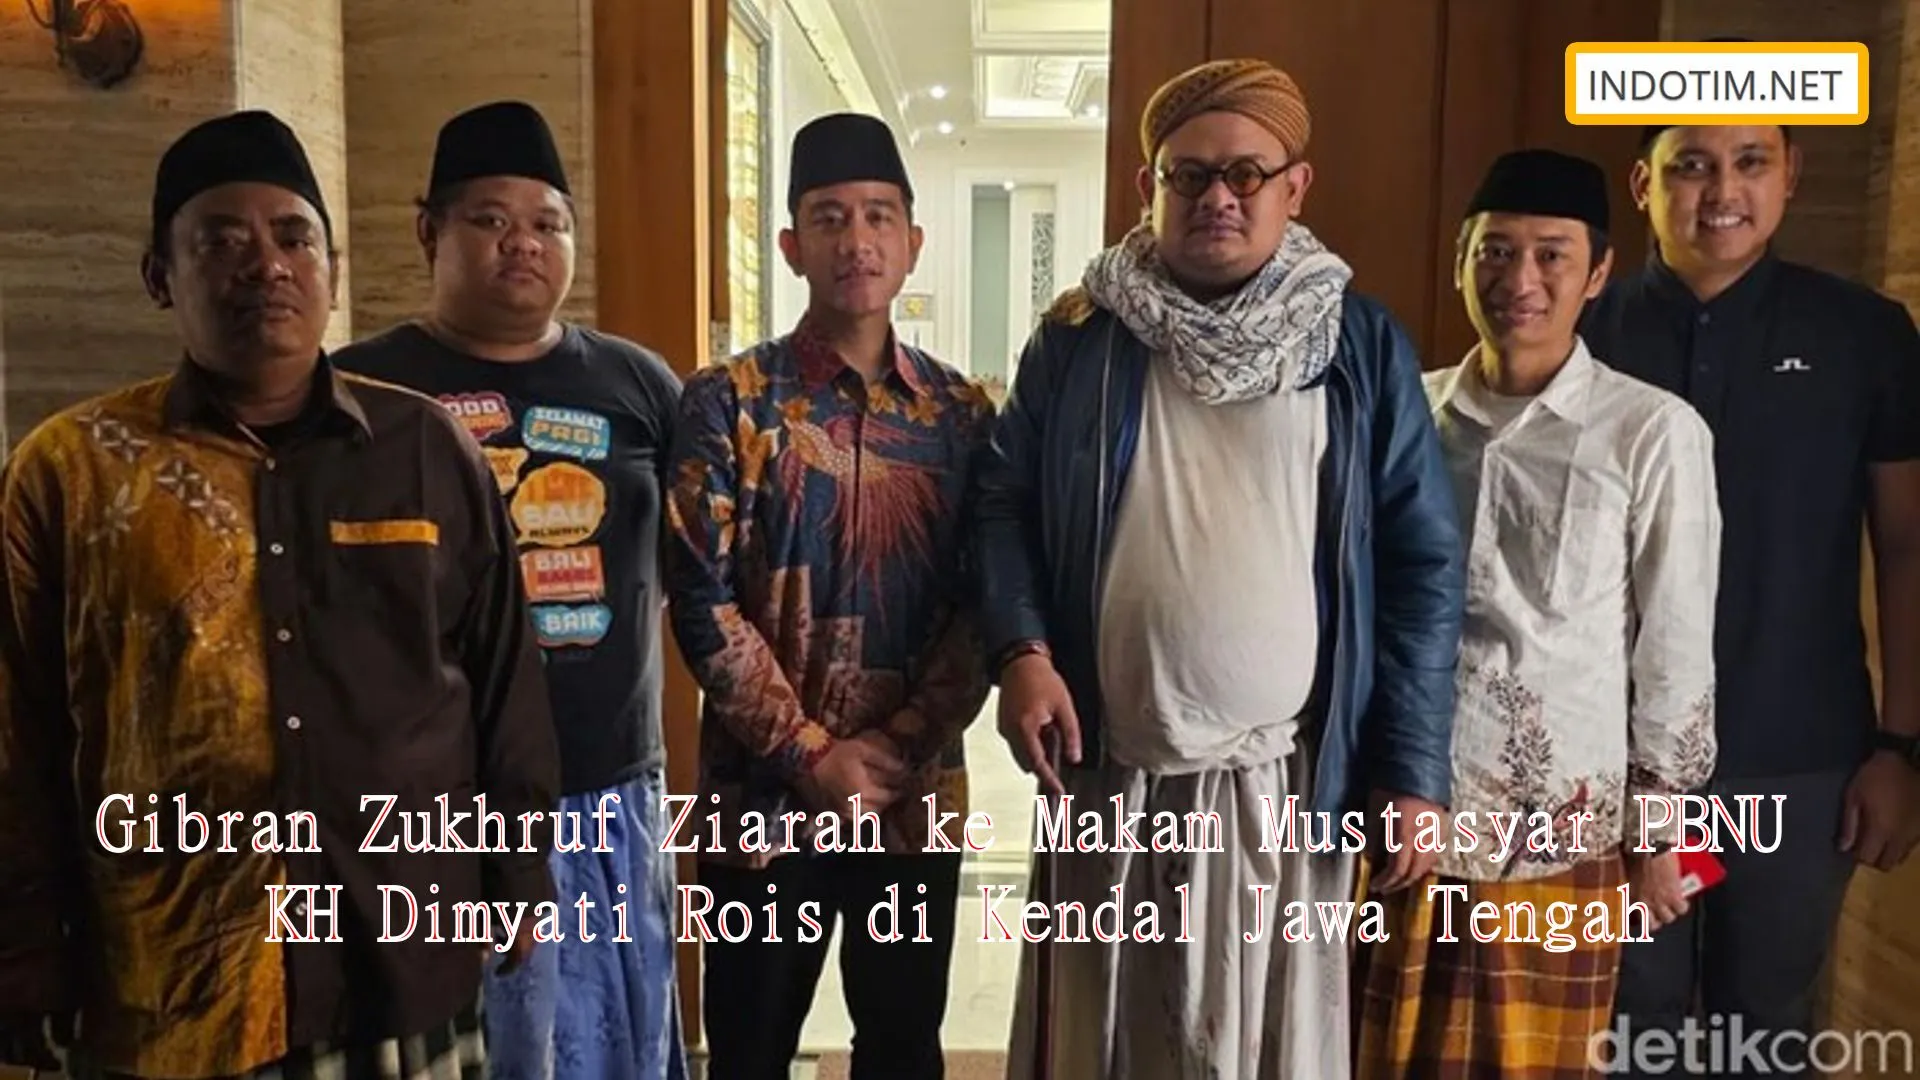 Gibran Zukhruf Ziarah ke Makam Mustasyar PBNU KH Dimyati Rois di Kendal Jawa Tengah